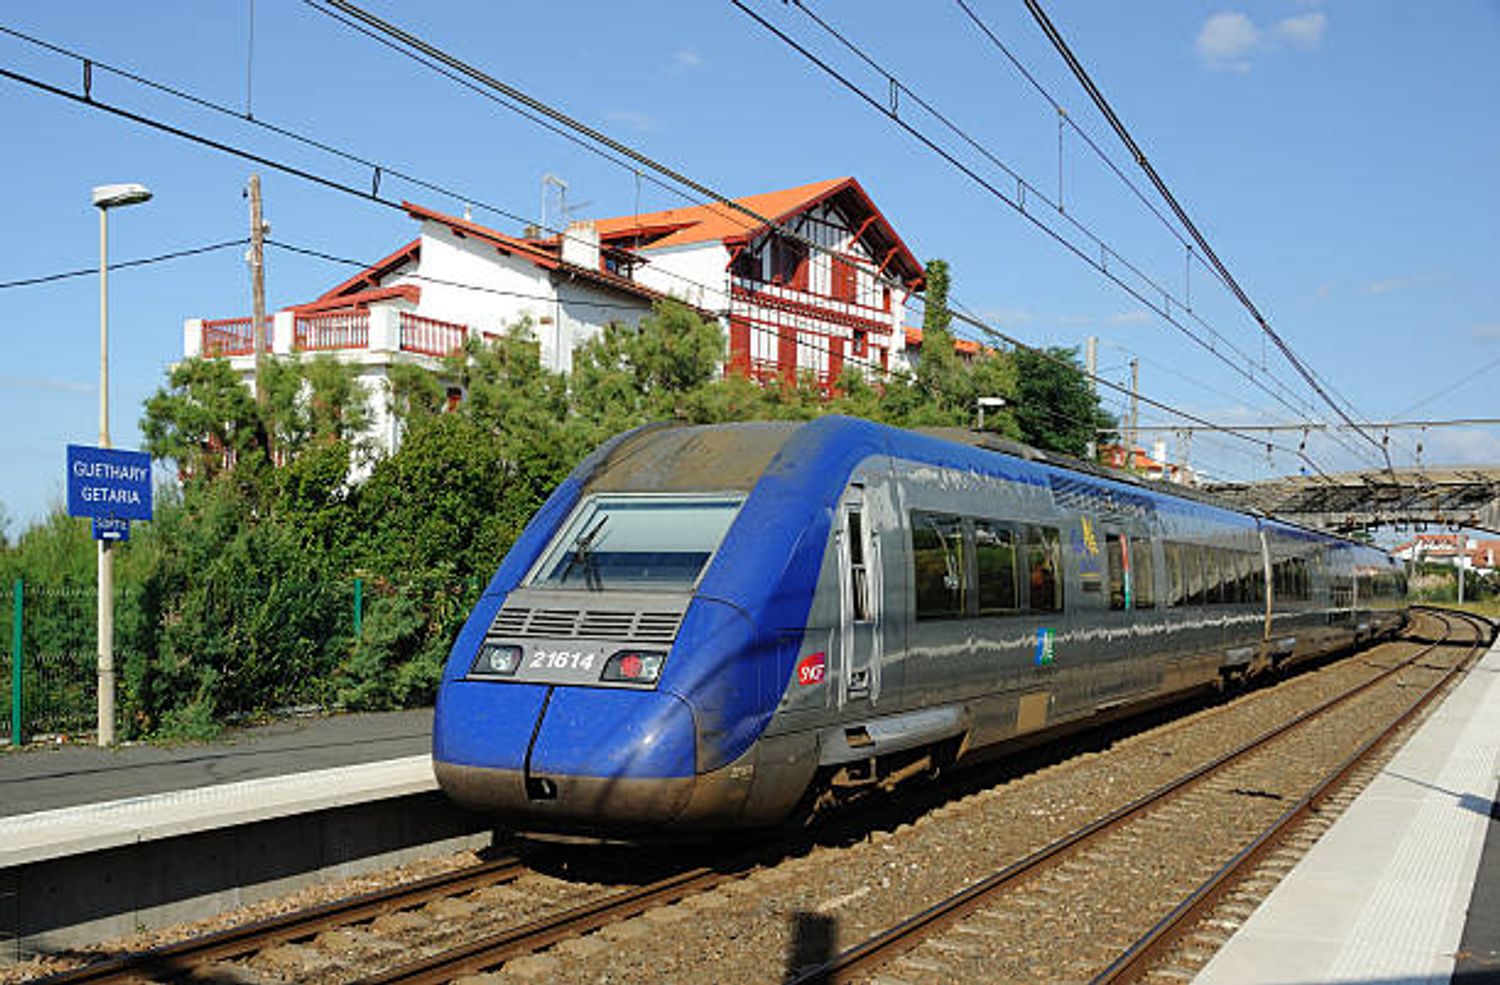 [ SOCIETE ]: Ouverture à la concurrence de la ligne TER Marseille-Nice, dès 2025